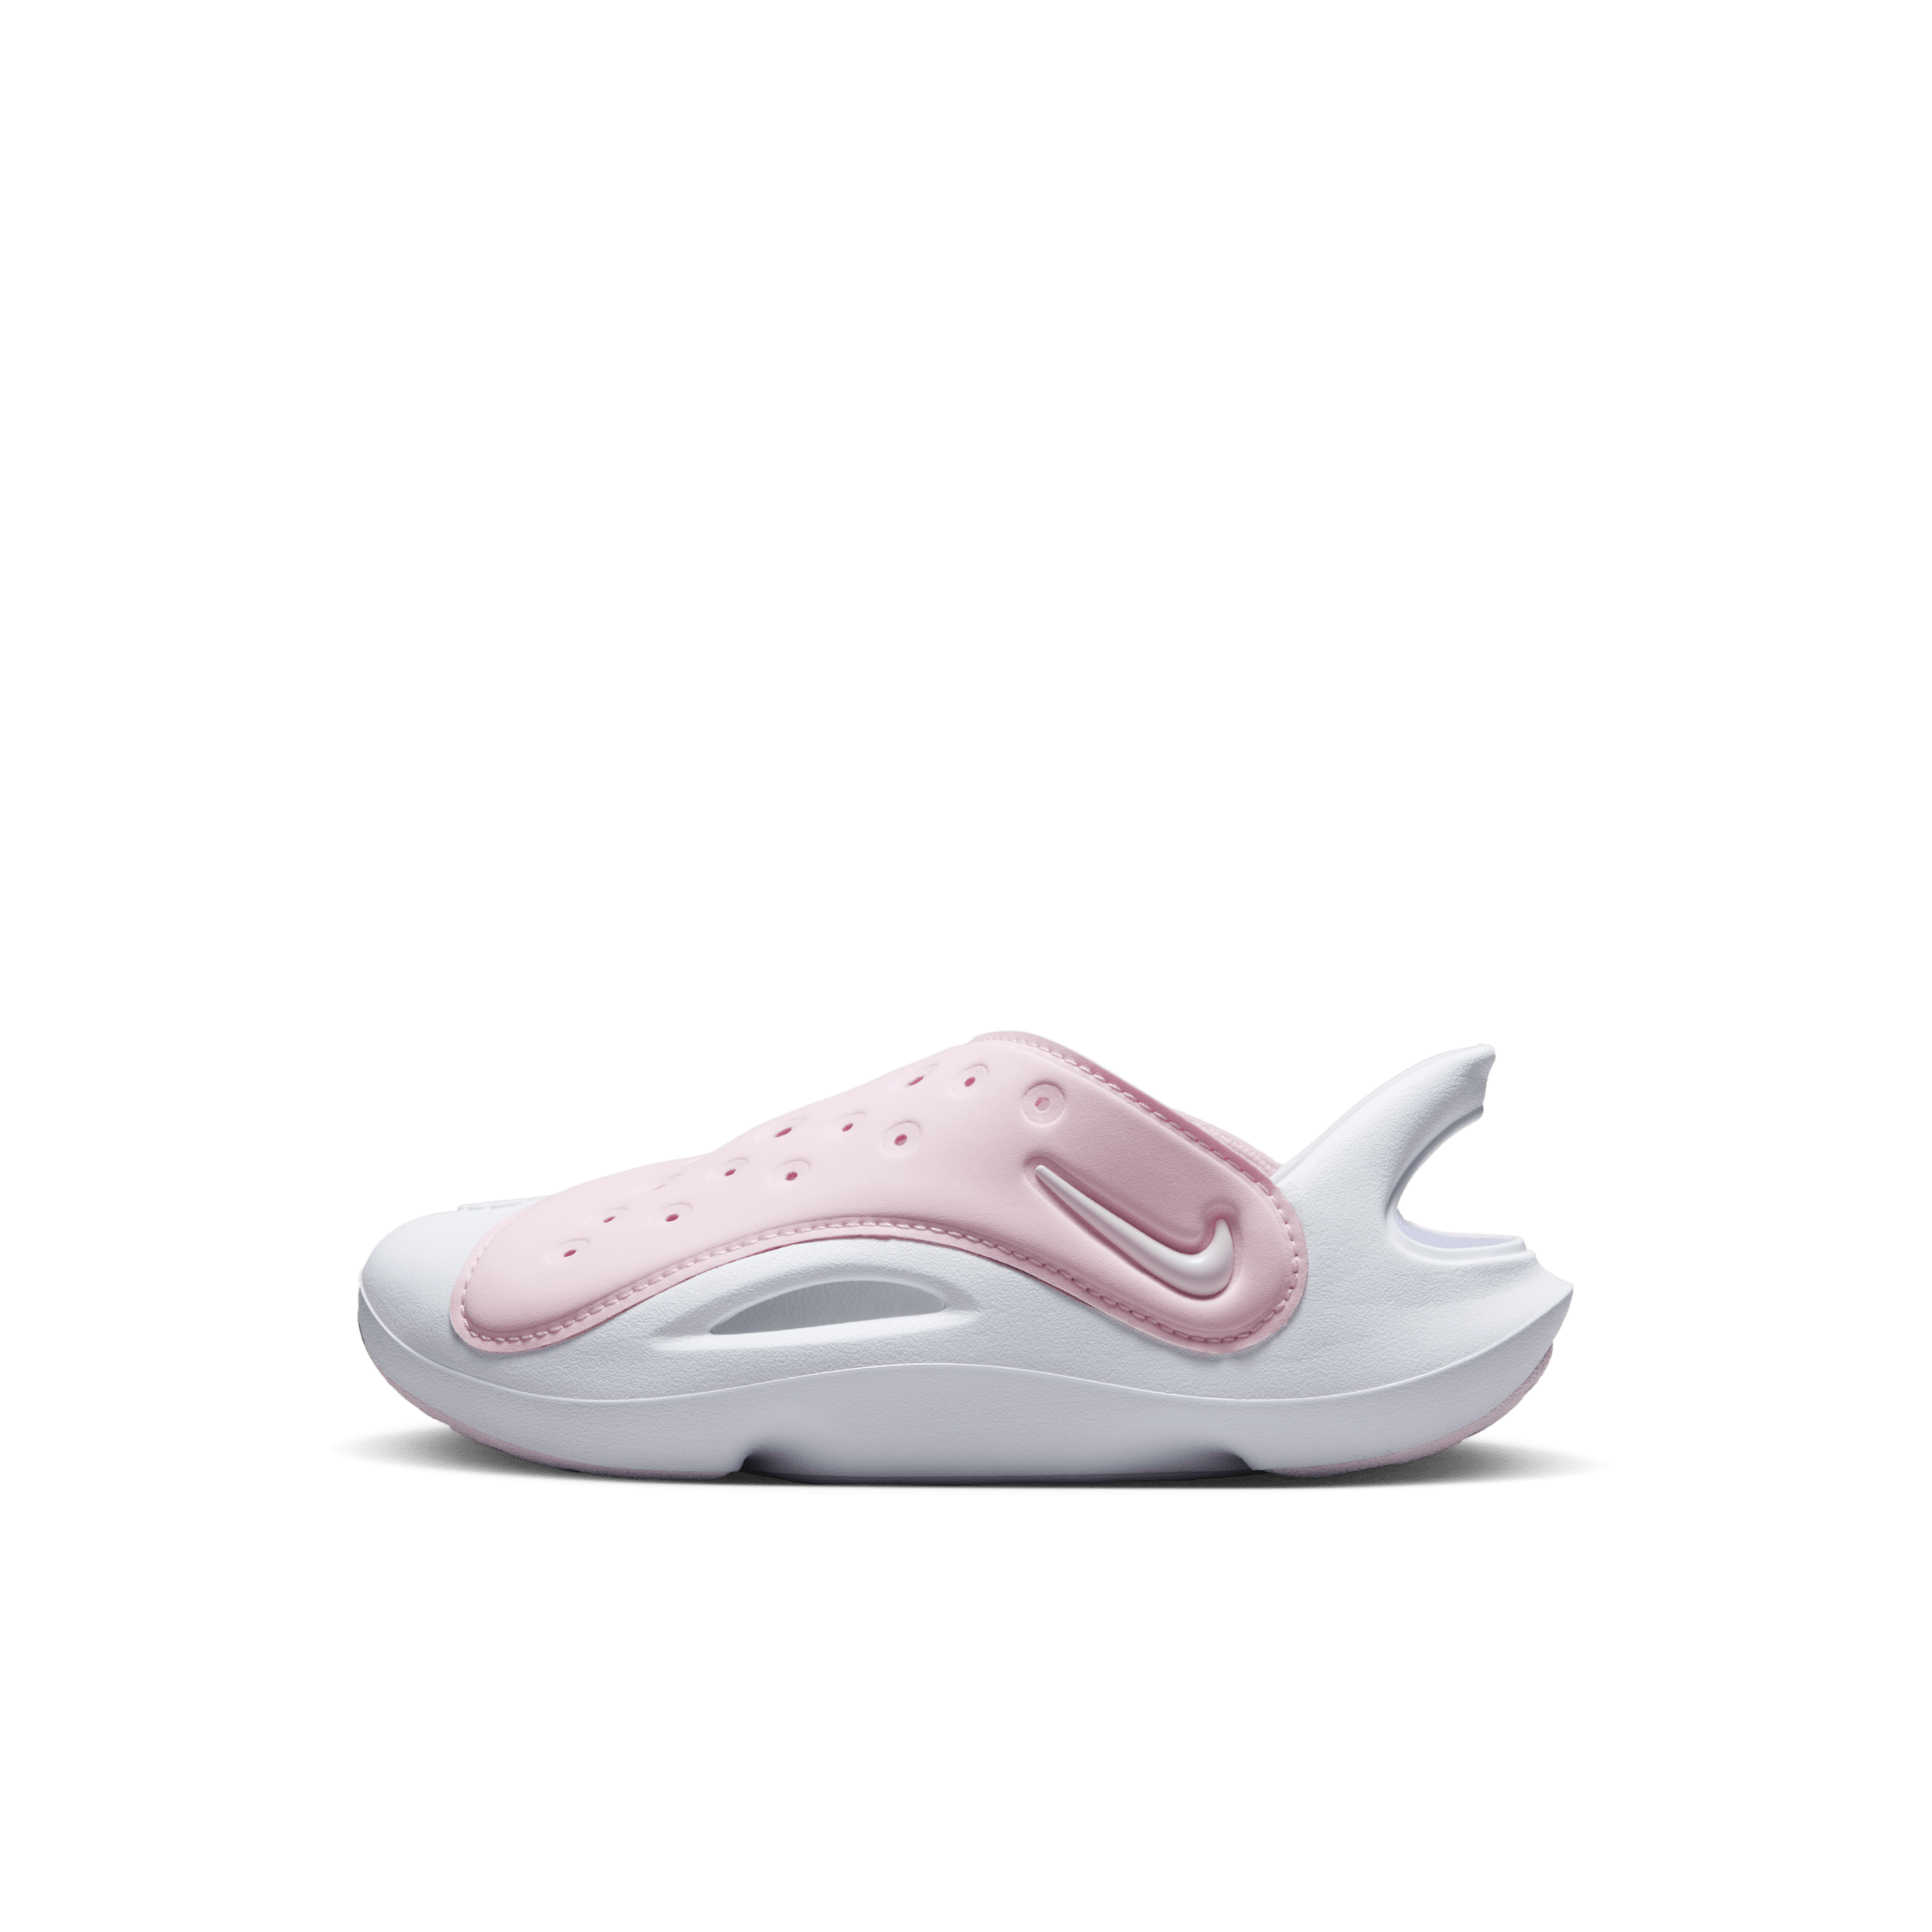 Nike Aqua Swoosh Sandalias - Niño/a pequeño/a - Rosa